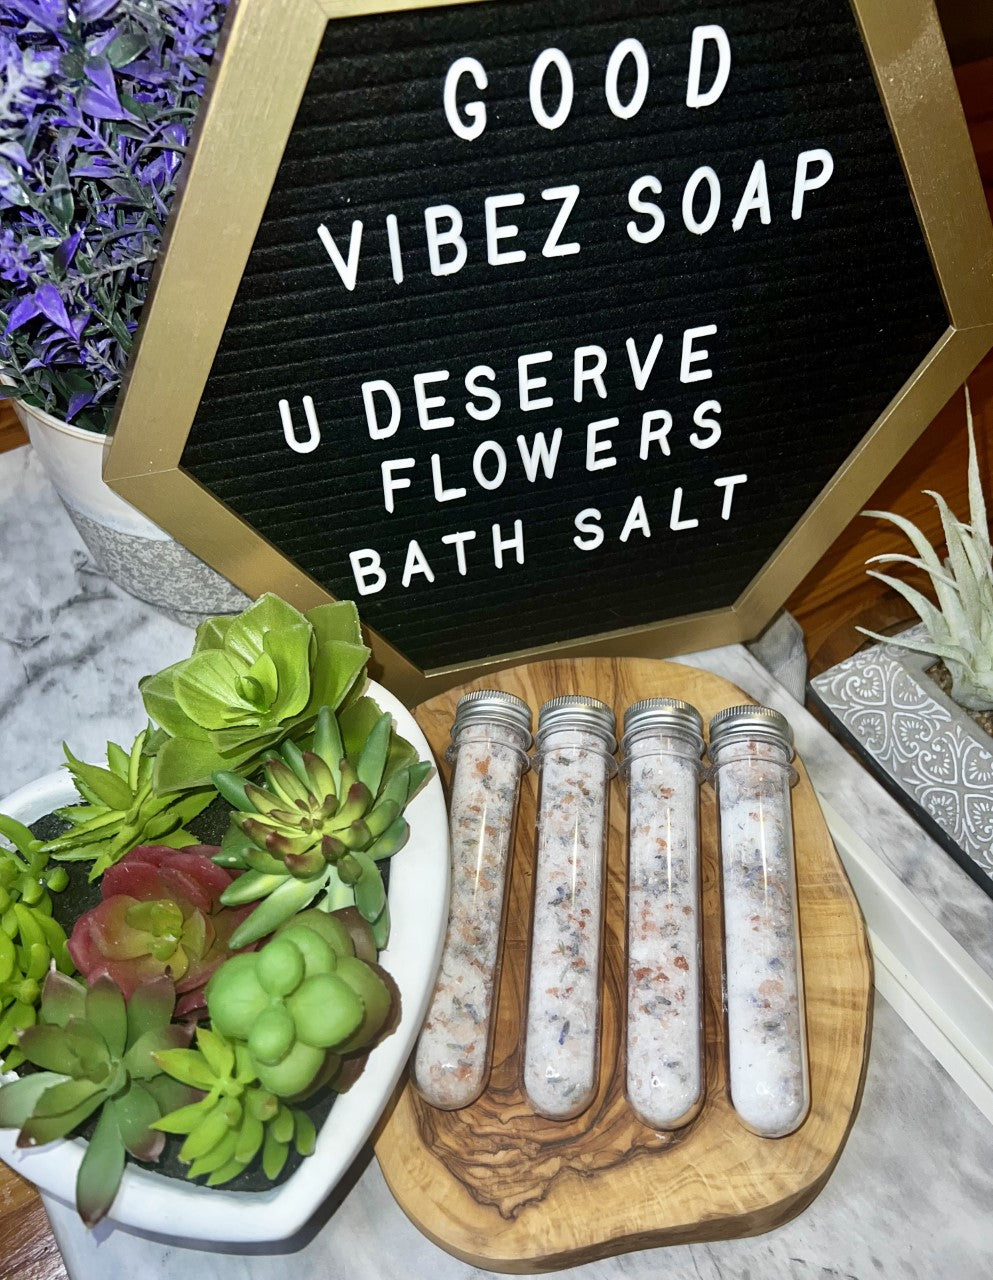 U Deserve Flowers Bath Salt